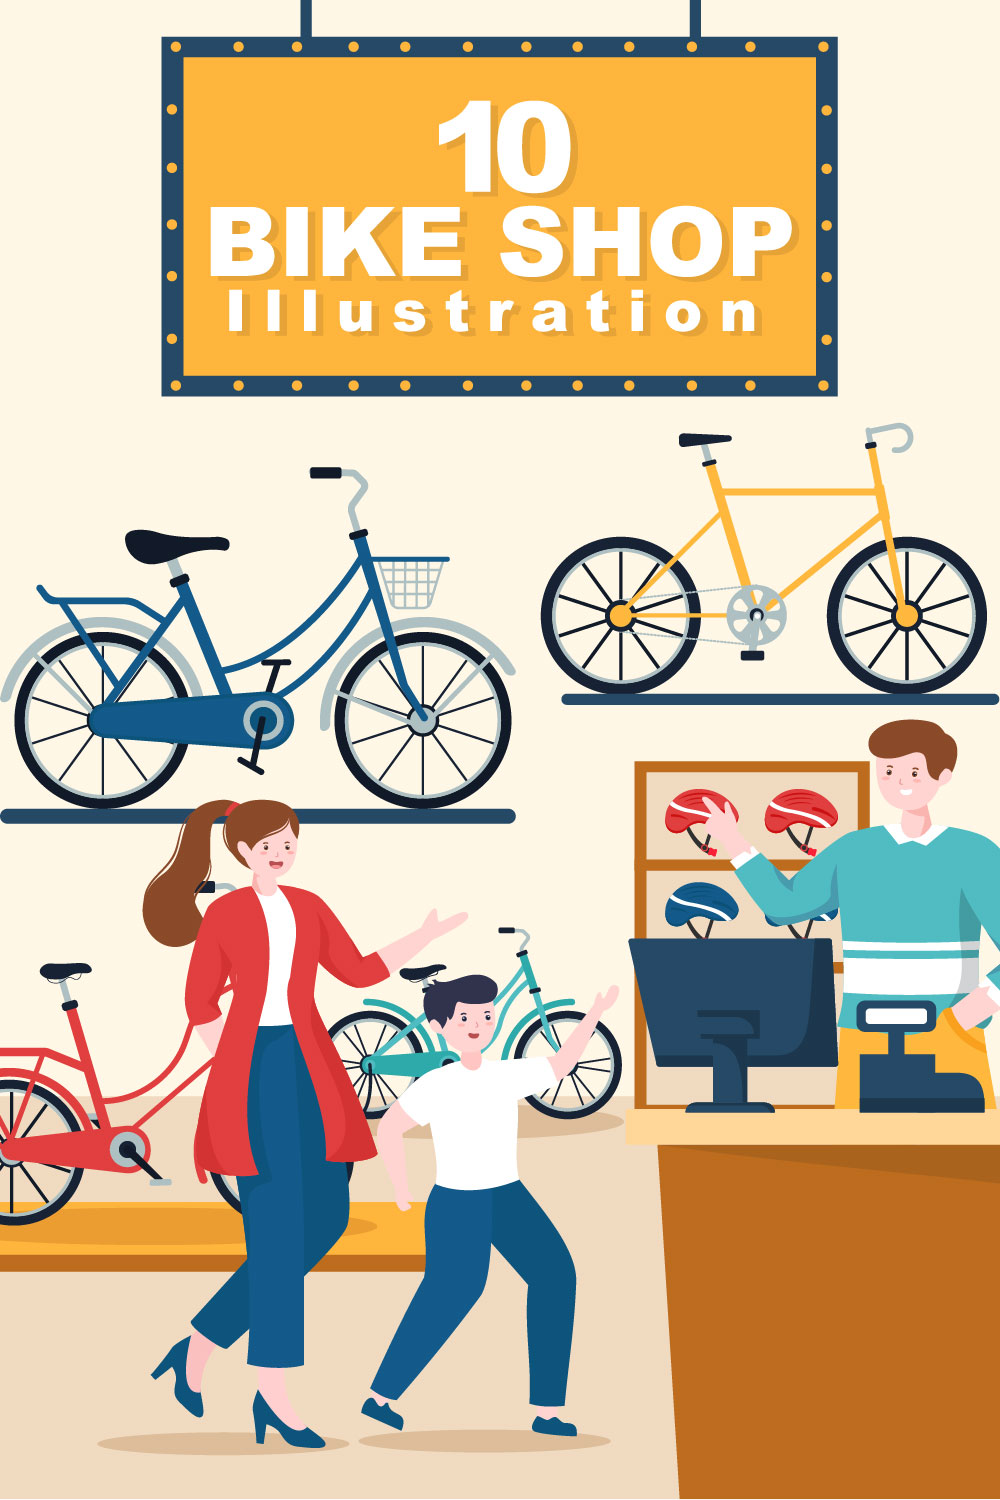 10 Bike Shop Illustration pinterest image.